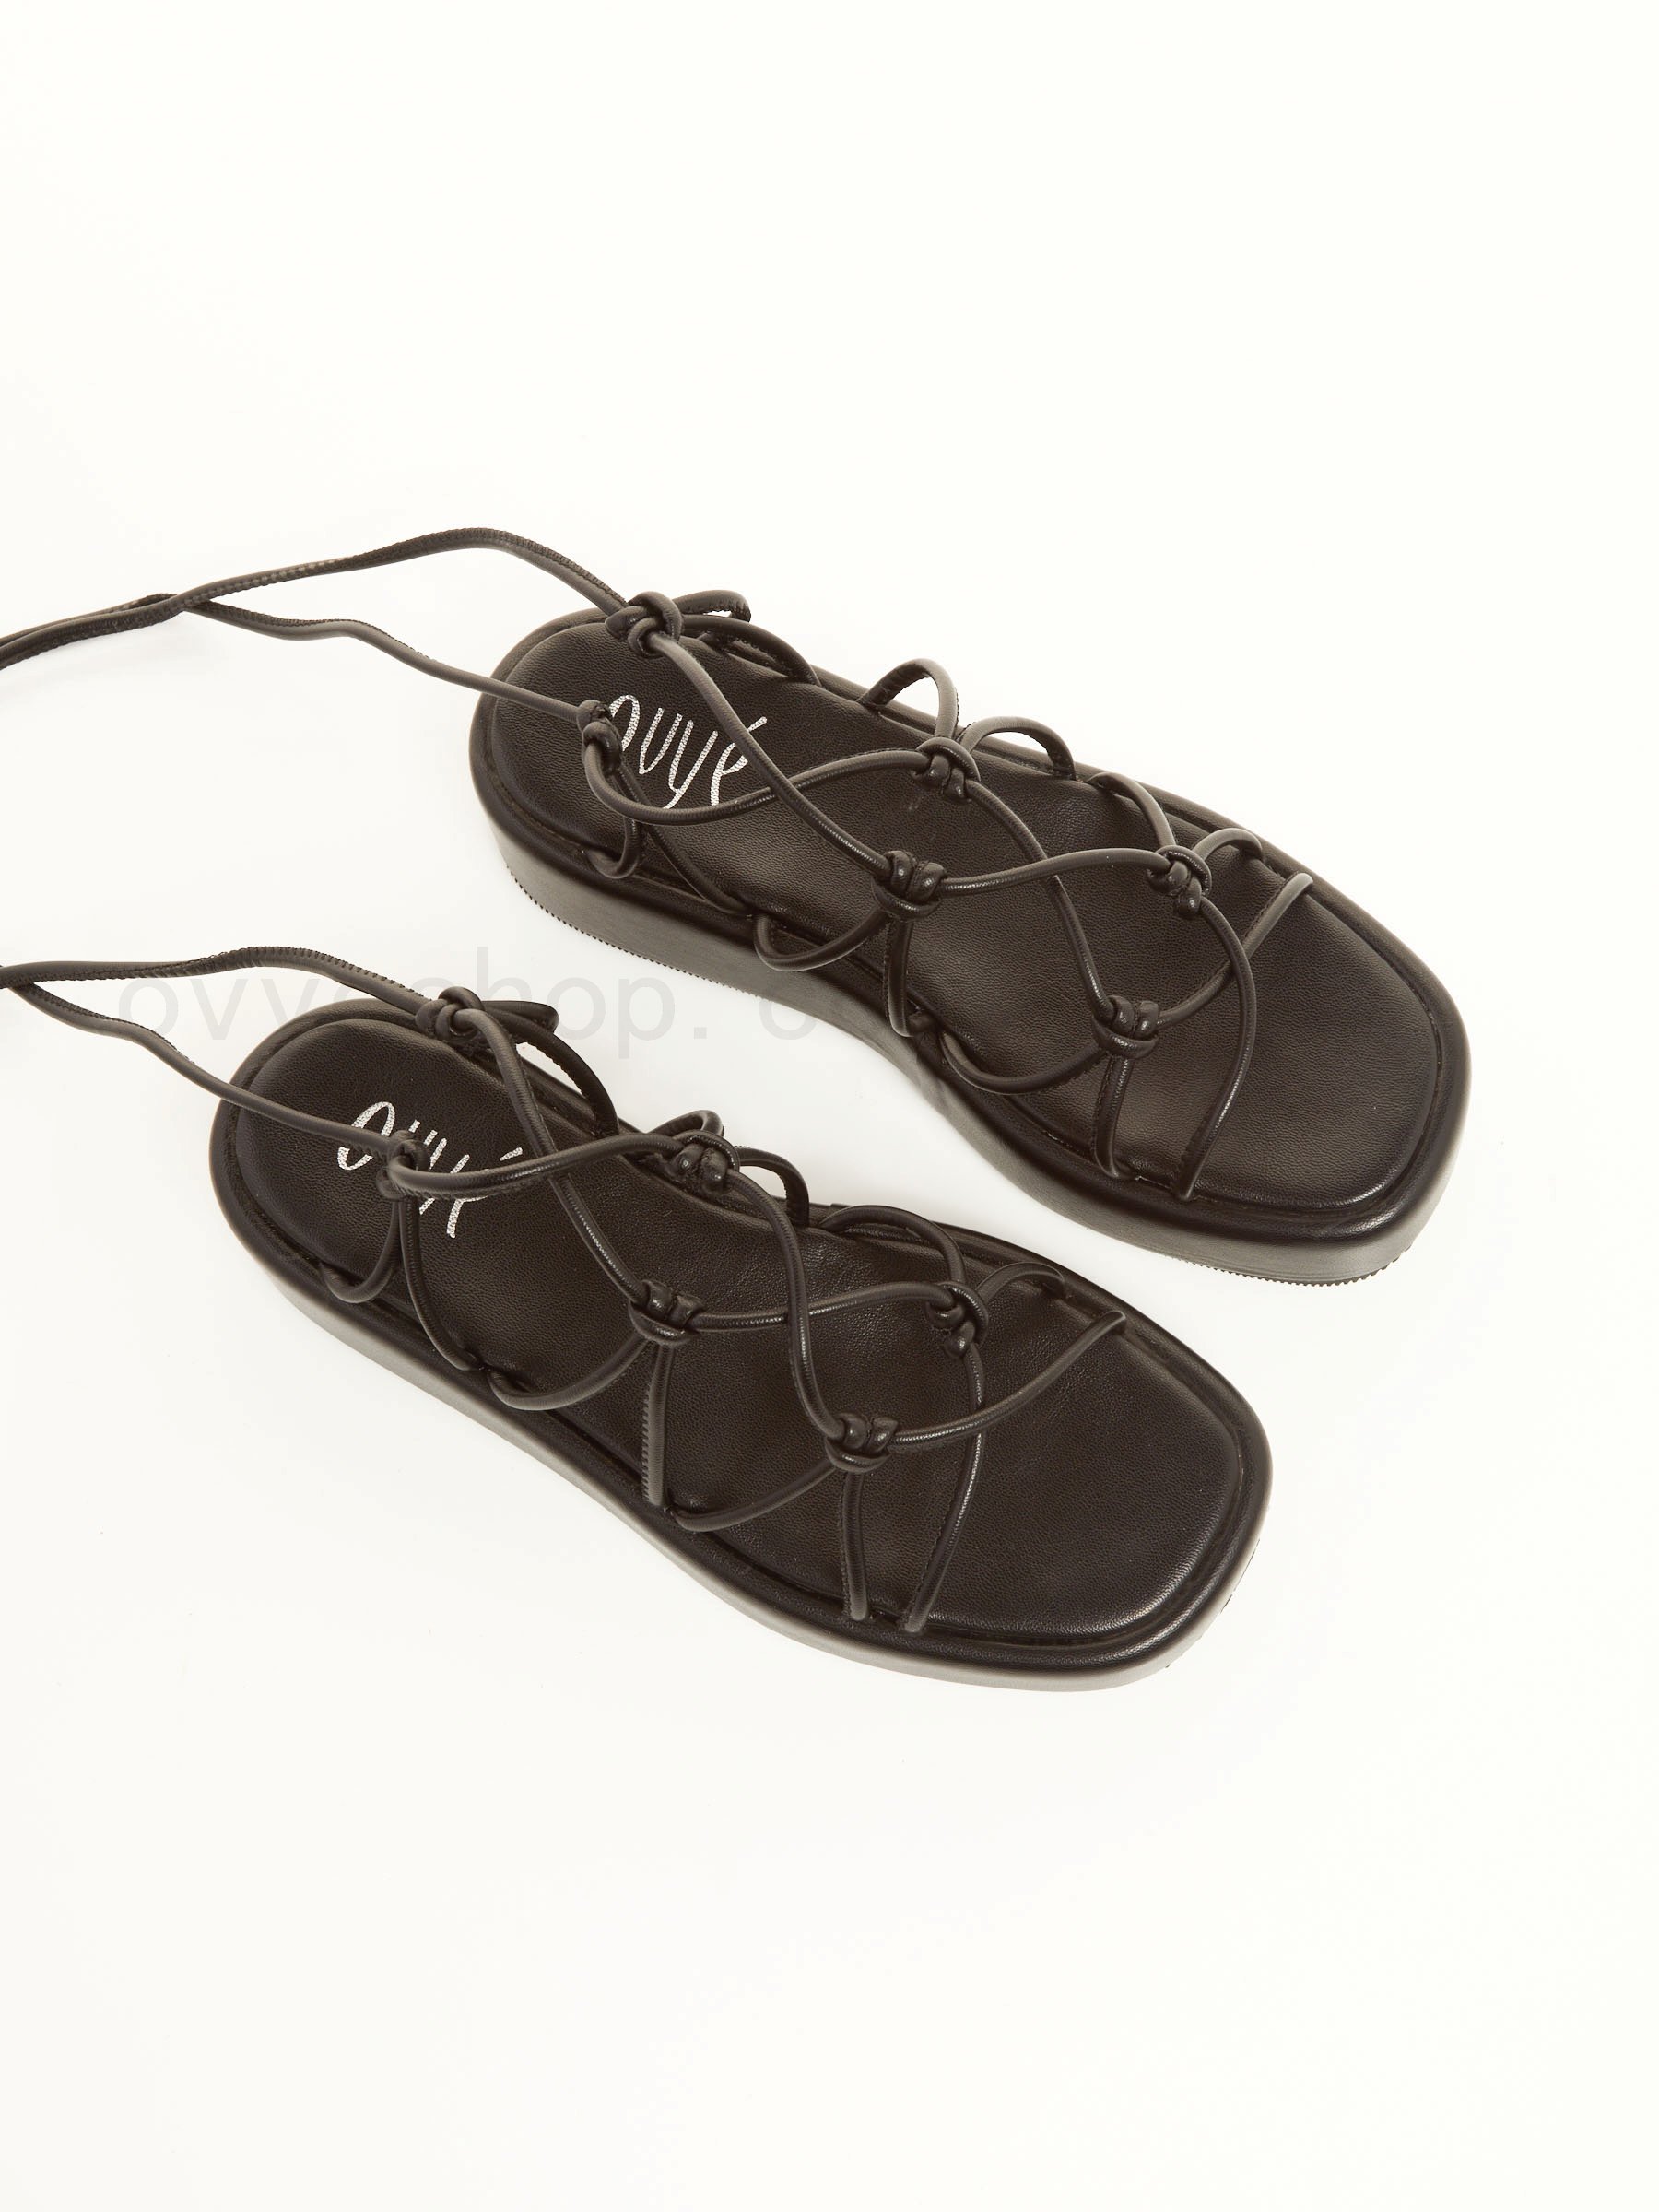 Sconti Online Greek Flat Sandals F0817885-0451 Acquistare